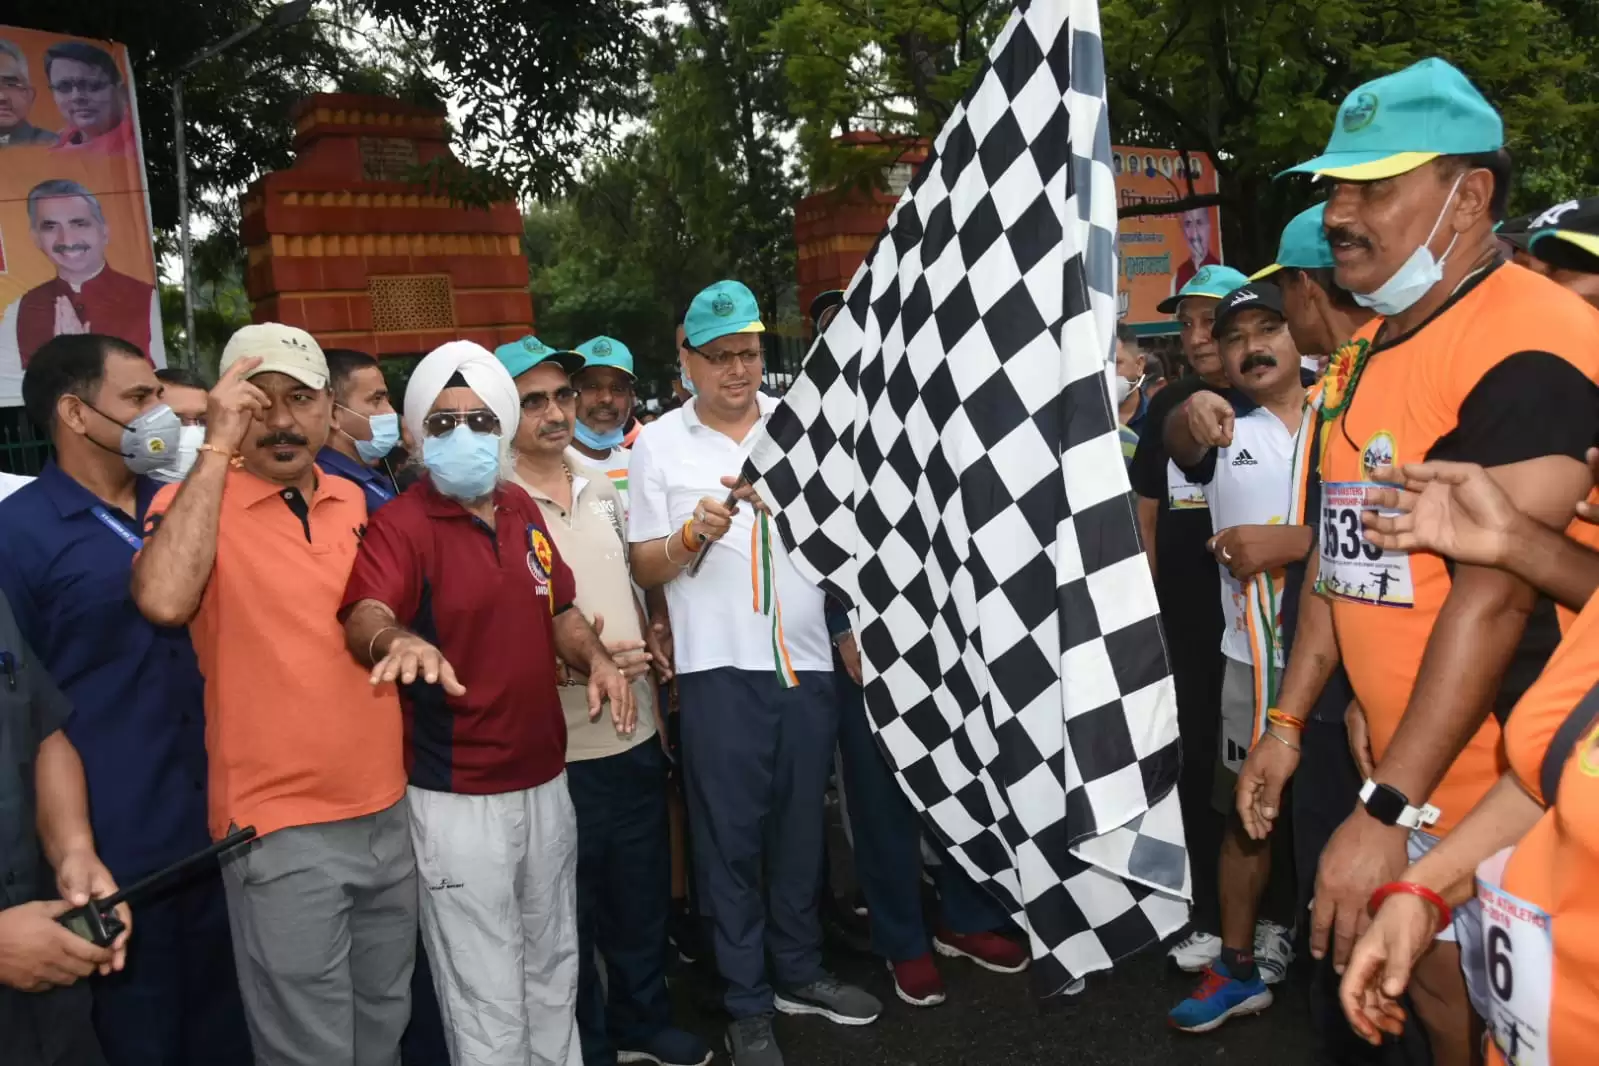 CM पुष्कर सिंह धामी ने नीरज चोपङा ग्लोरी क्रास कंट्री रन को किया फ्लैग ऑफ, राज्य सरकार खिलाडियों को प्रोत्साहित करने वाली नई खेल नीति लाएगी